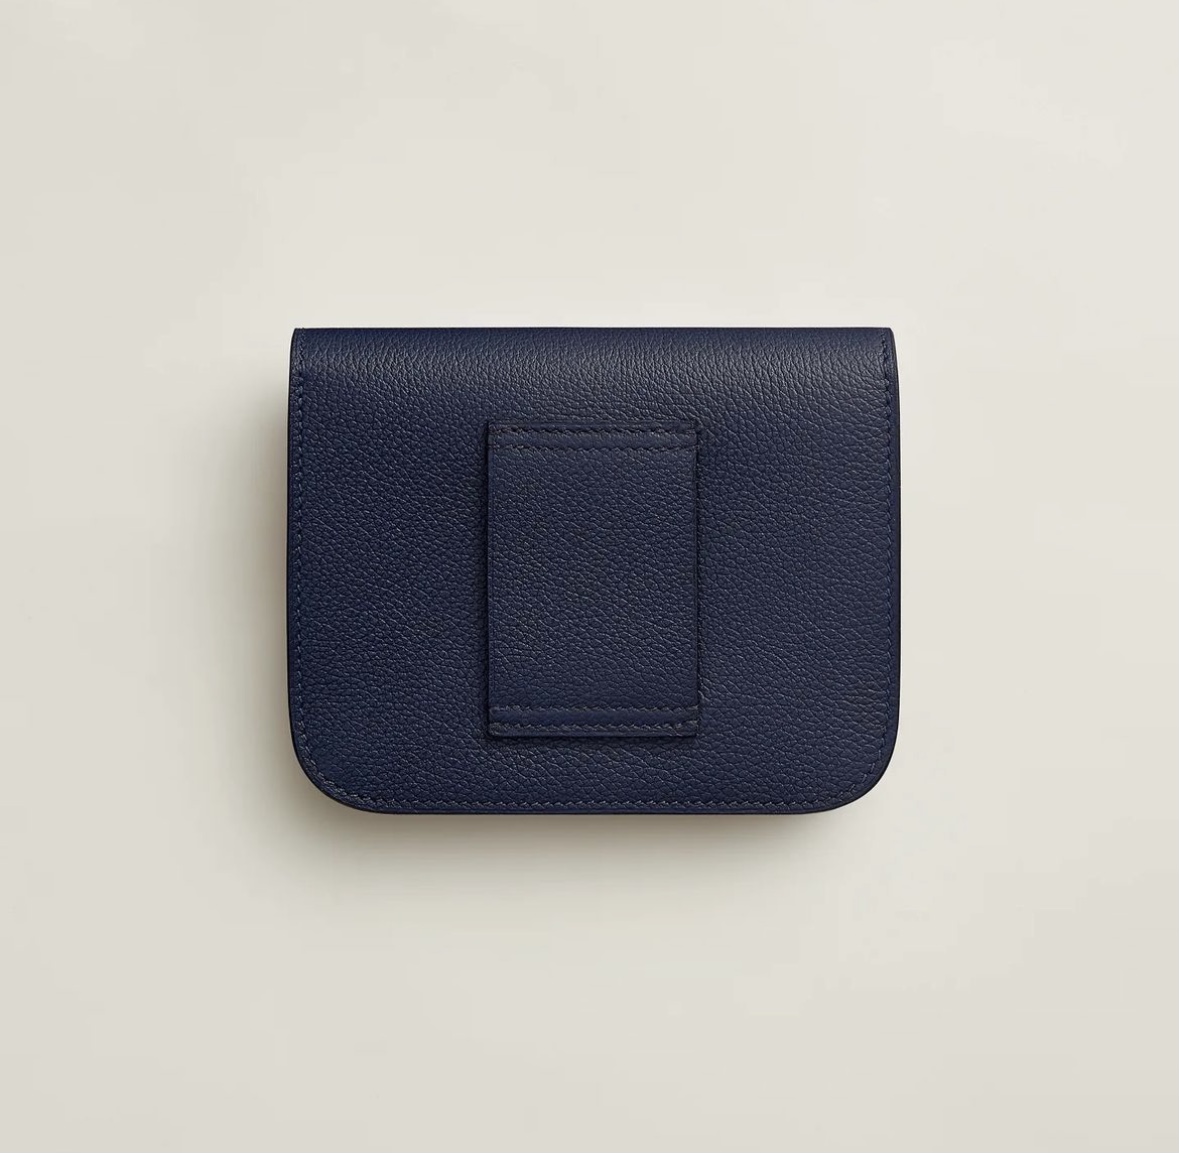 愛馬仕包包官方價格及圖片 Hermès Constance Slim wallet Bleu Nuit Evercolor